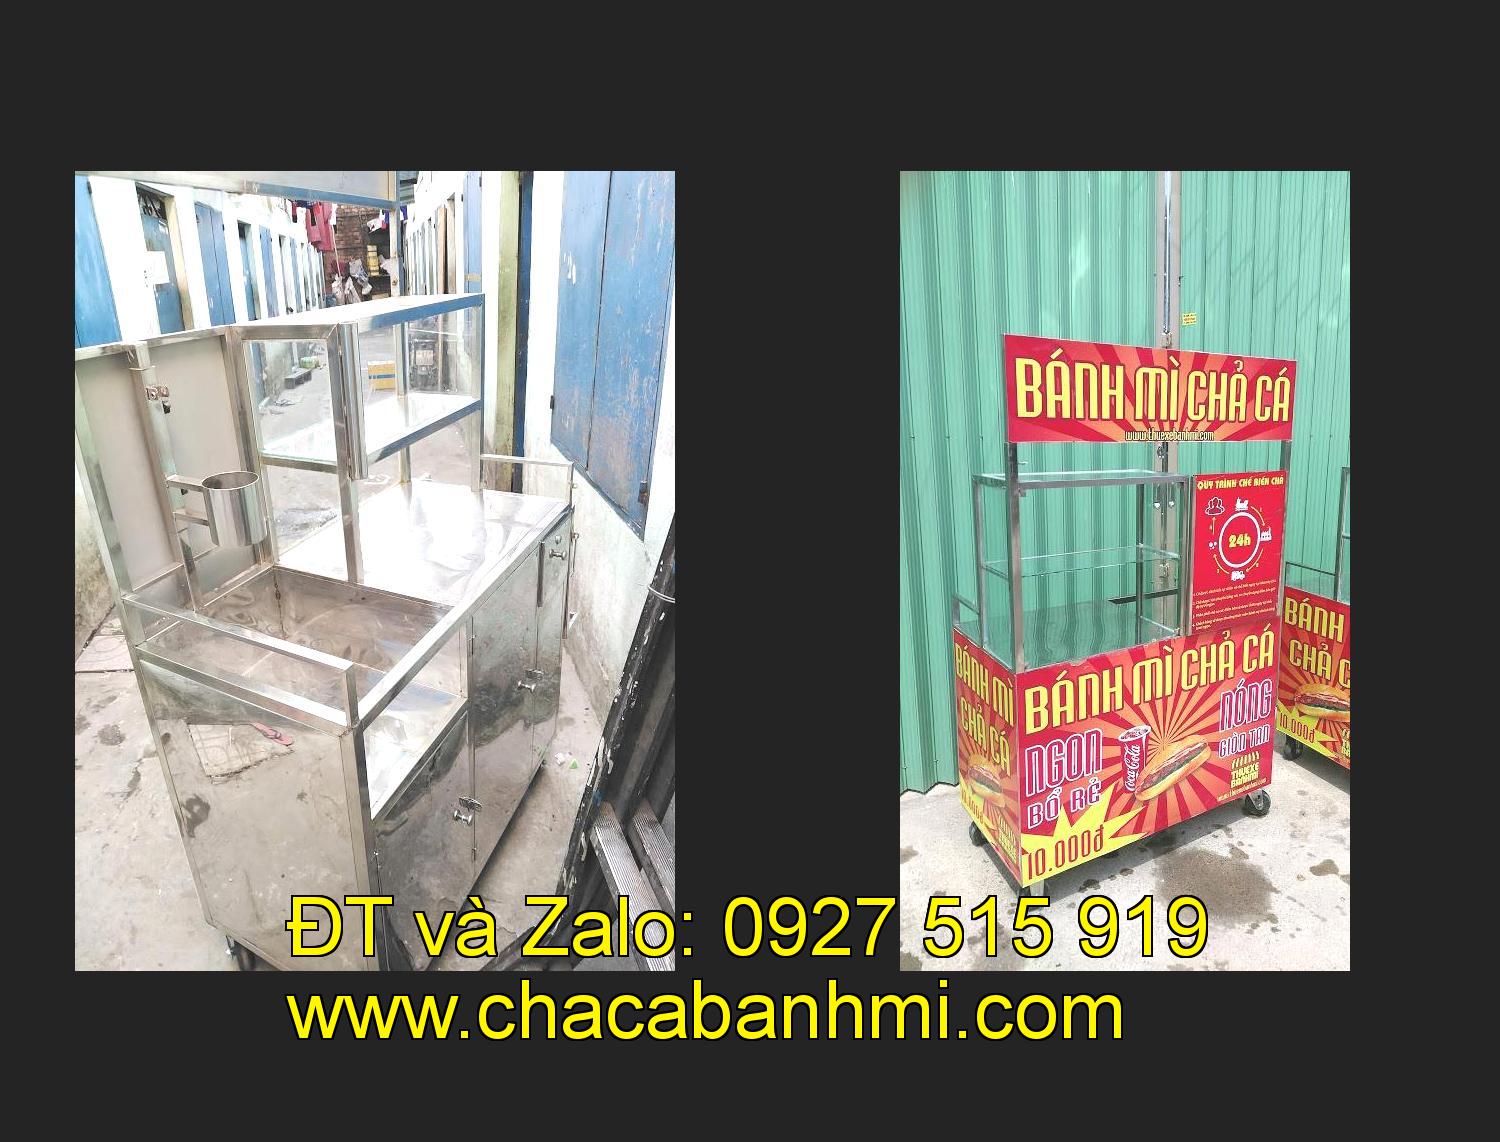 xe bánh mì chả cá inox tại tỉnh Quảng Bình